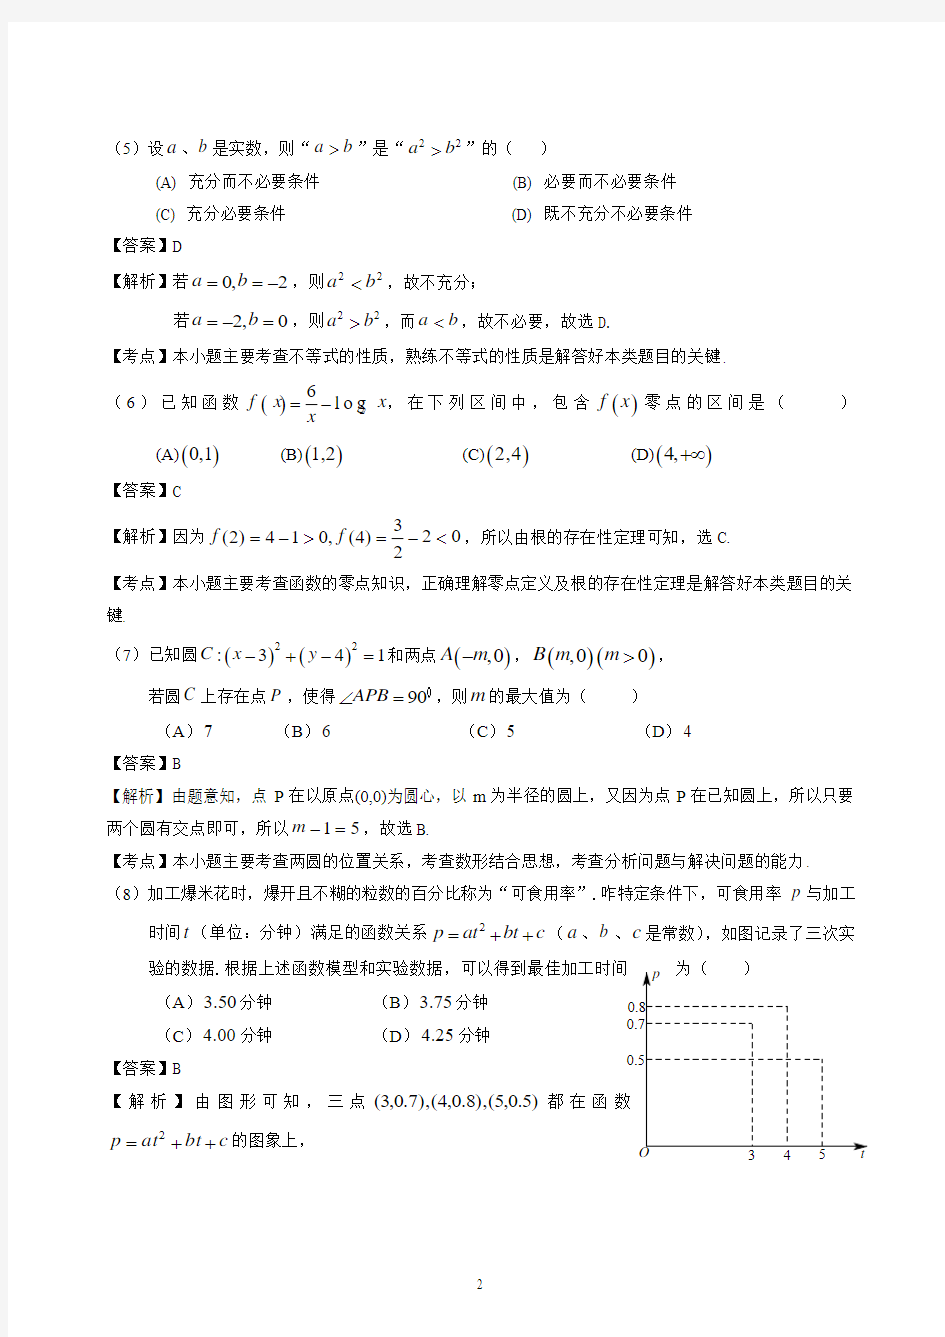 2014年北京高考文科数学试题及答案